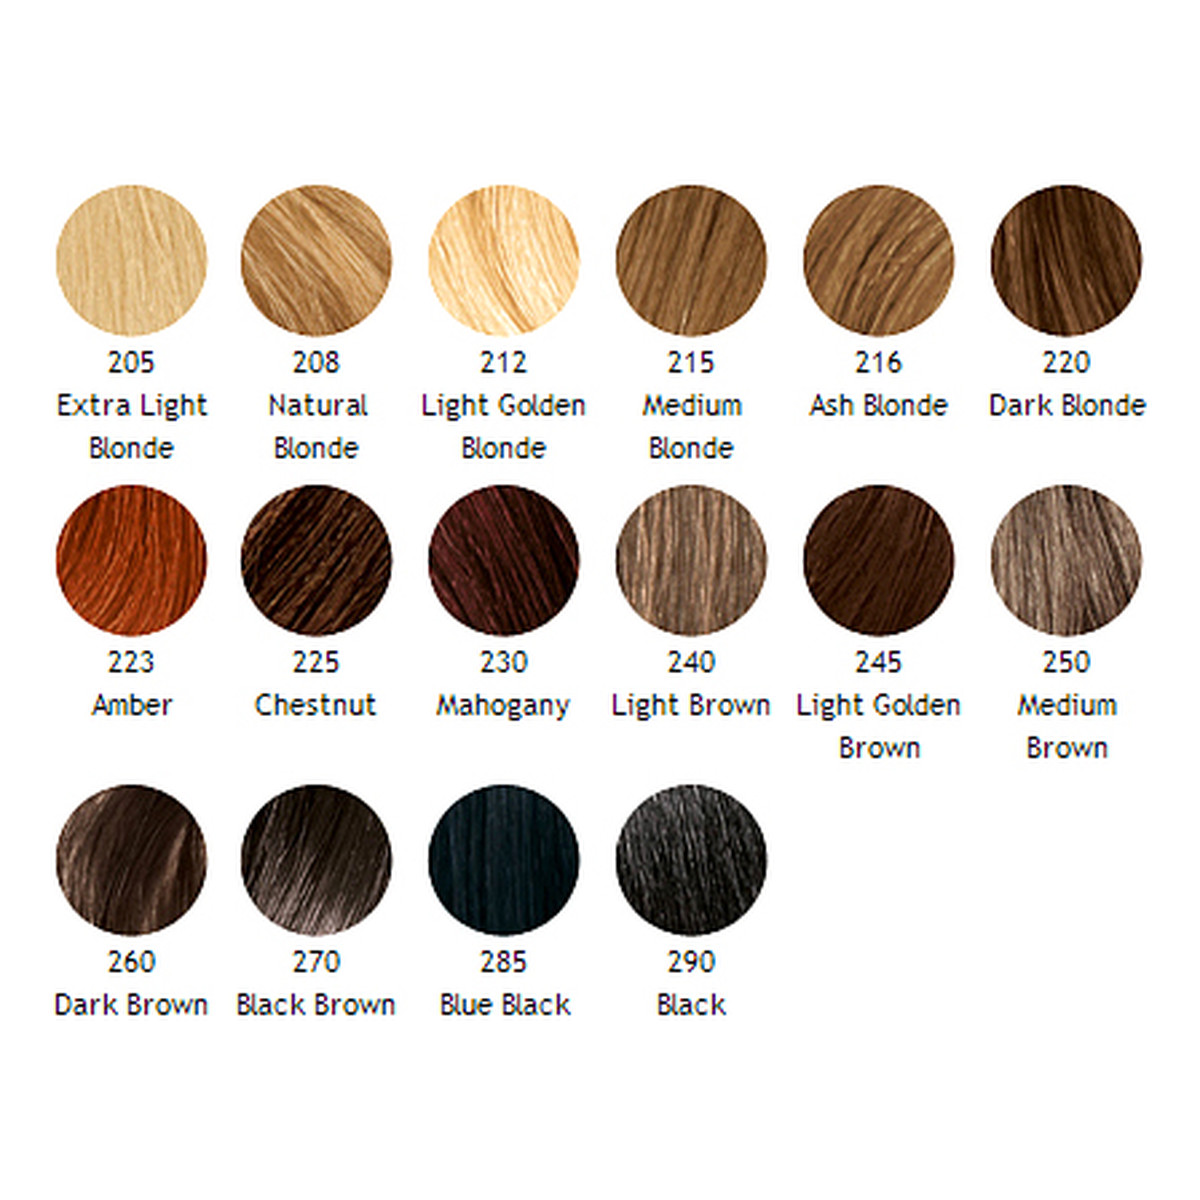 Schwarzkopf Proffesional Quality Color Krem Koloryzujący Do Włosów Essential Color